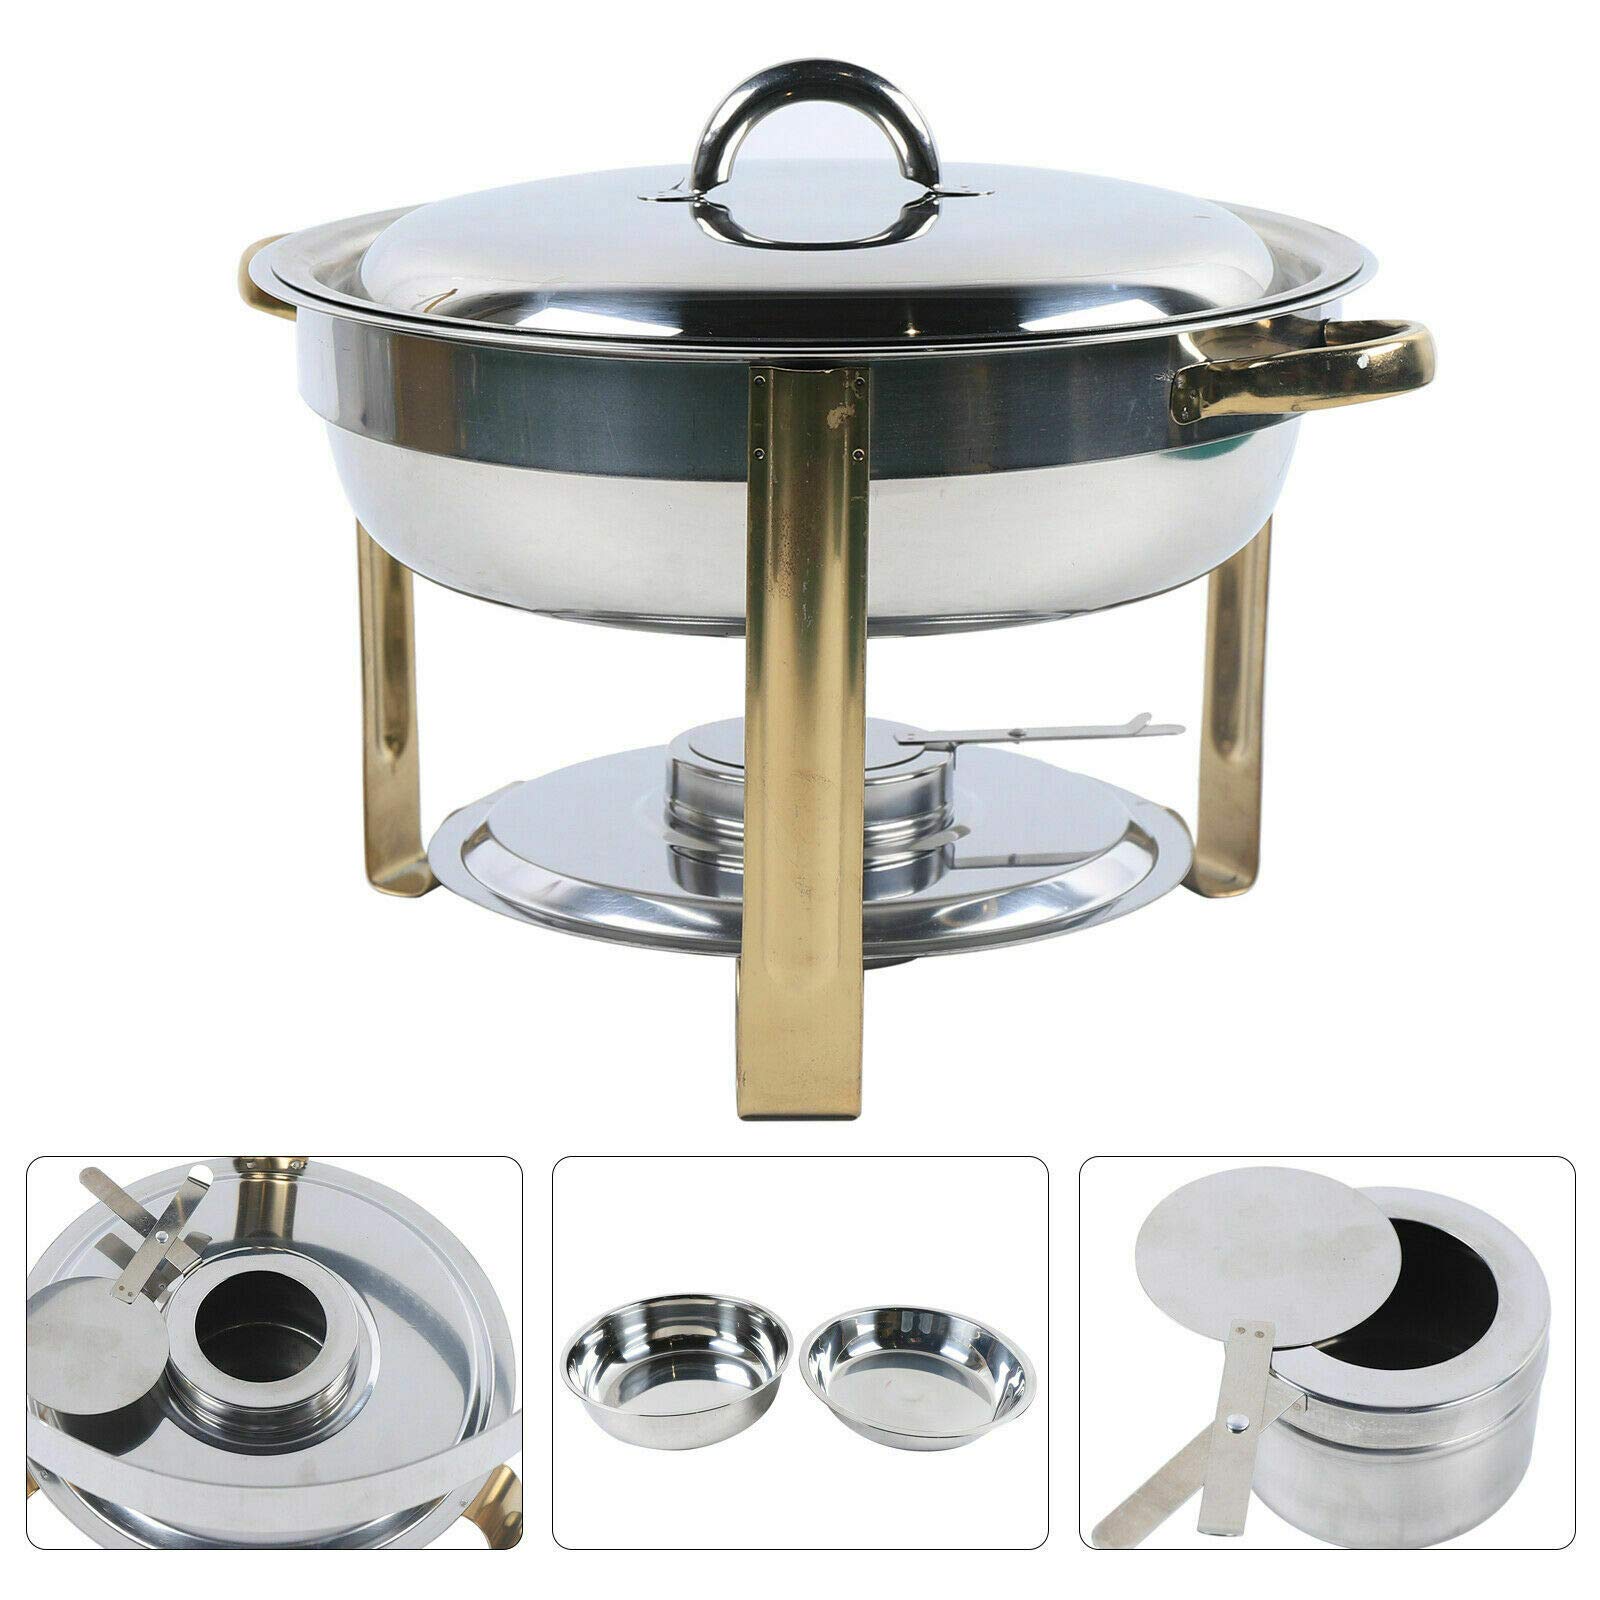 Set de chafing dish - 4 l - Rond - En acier inoxydable - Passe au lave-vaisselle - Avec récipient à pâte de carburant